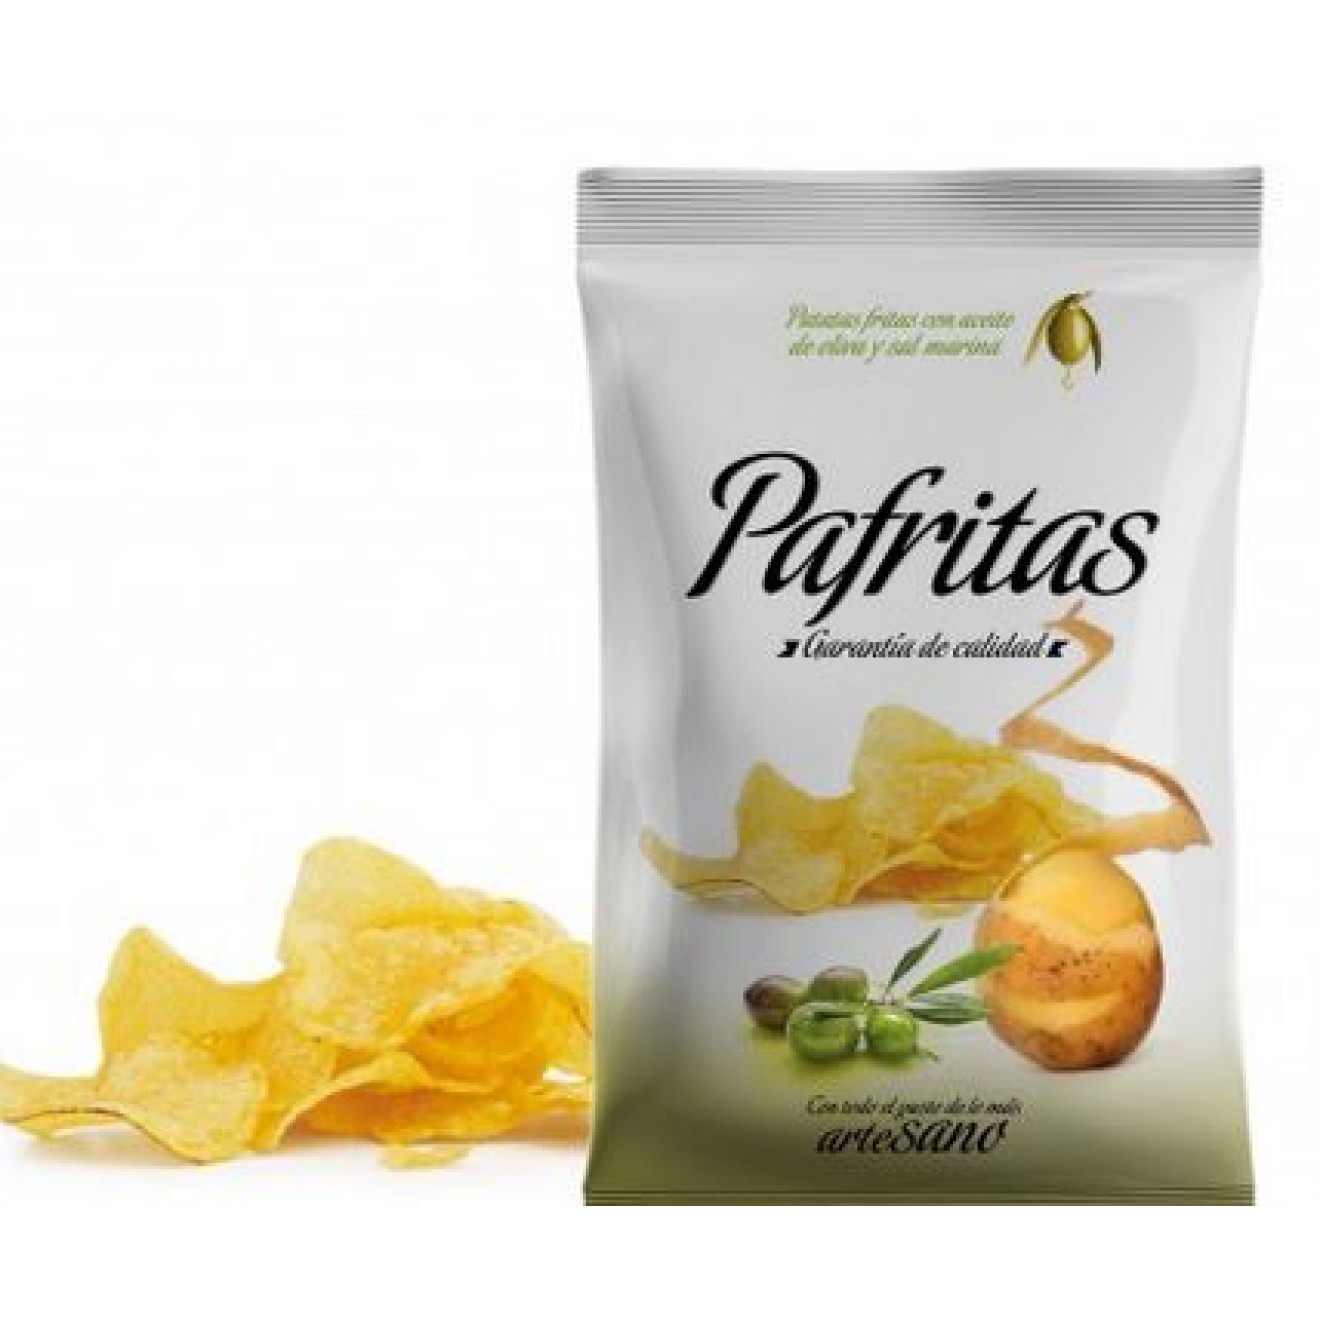 Pafritas - Kartoffelchips mit Olivenöl und Meersalz